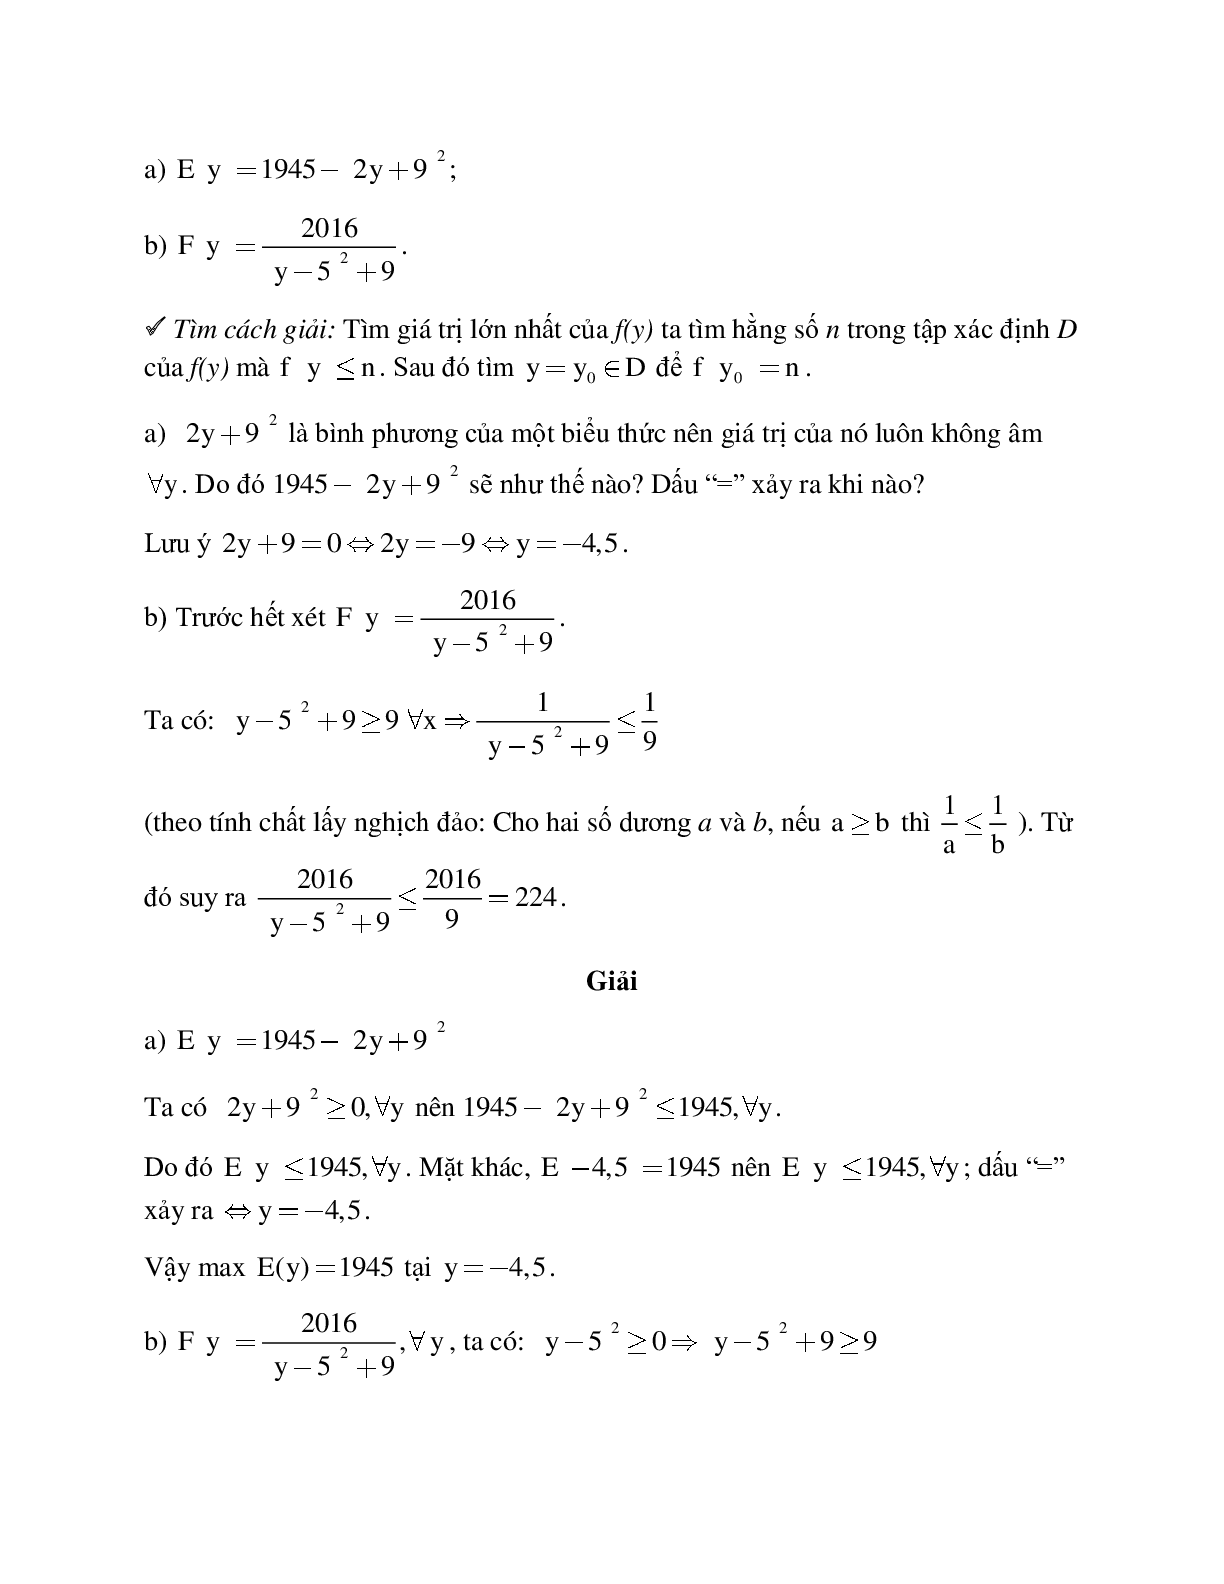 Hệ thống bài tập về Giá trị lớn nhất - Giá trị nhỏ nhất của một biểu thức đại số có lời giải (trang 3)